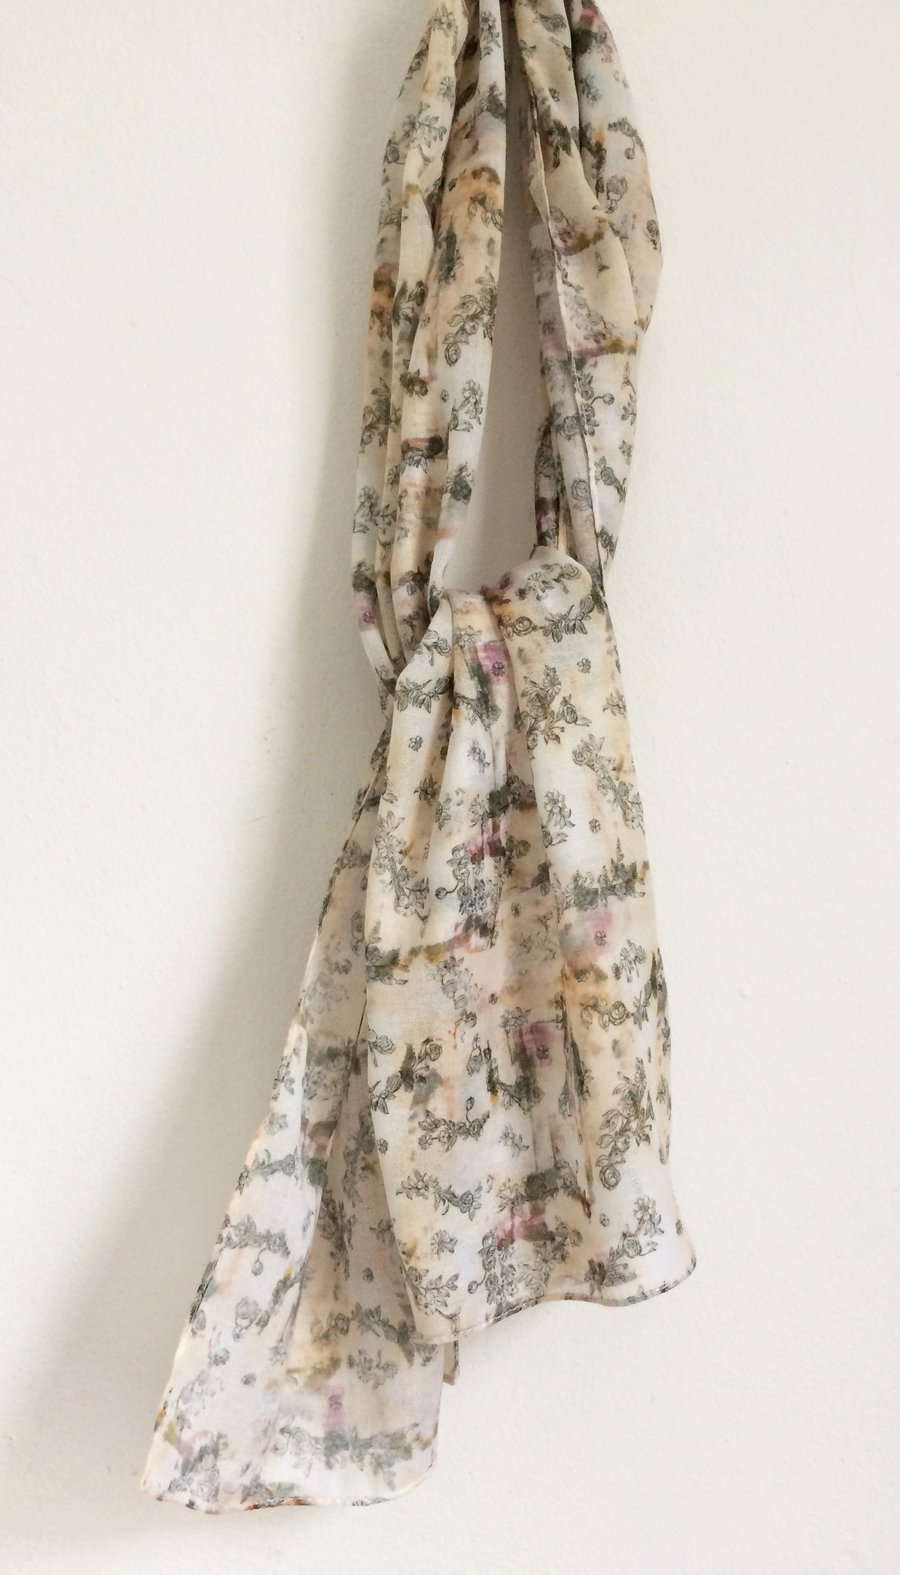 Flowery muslin scarf vintage style print